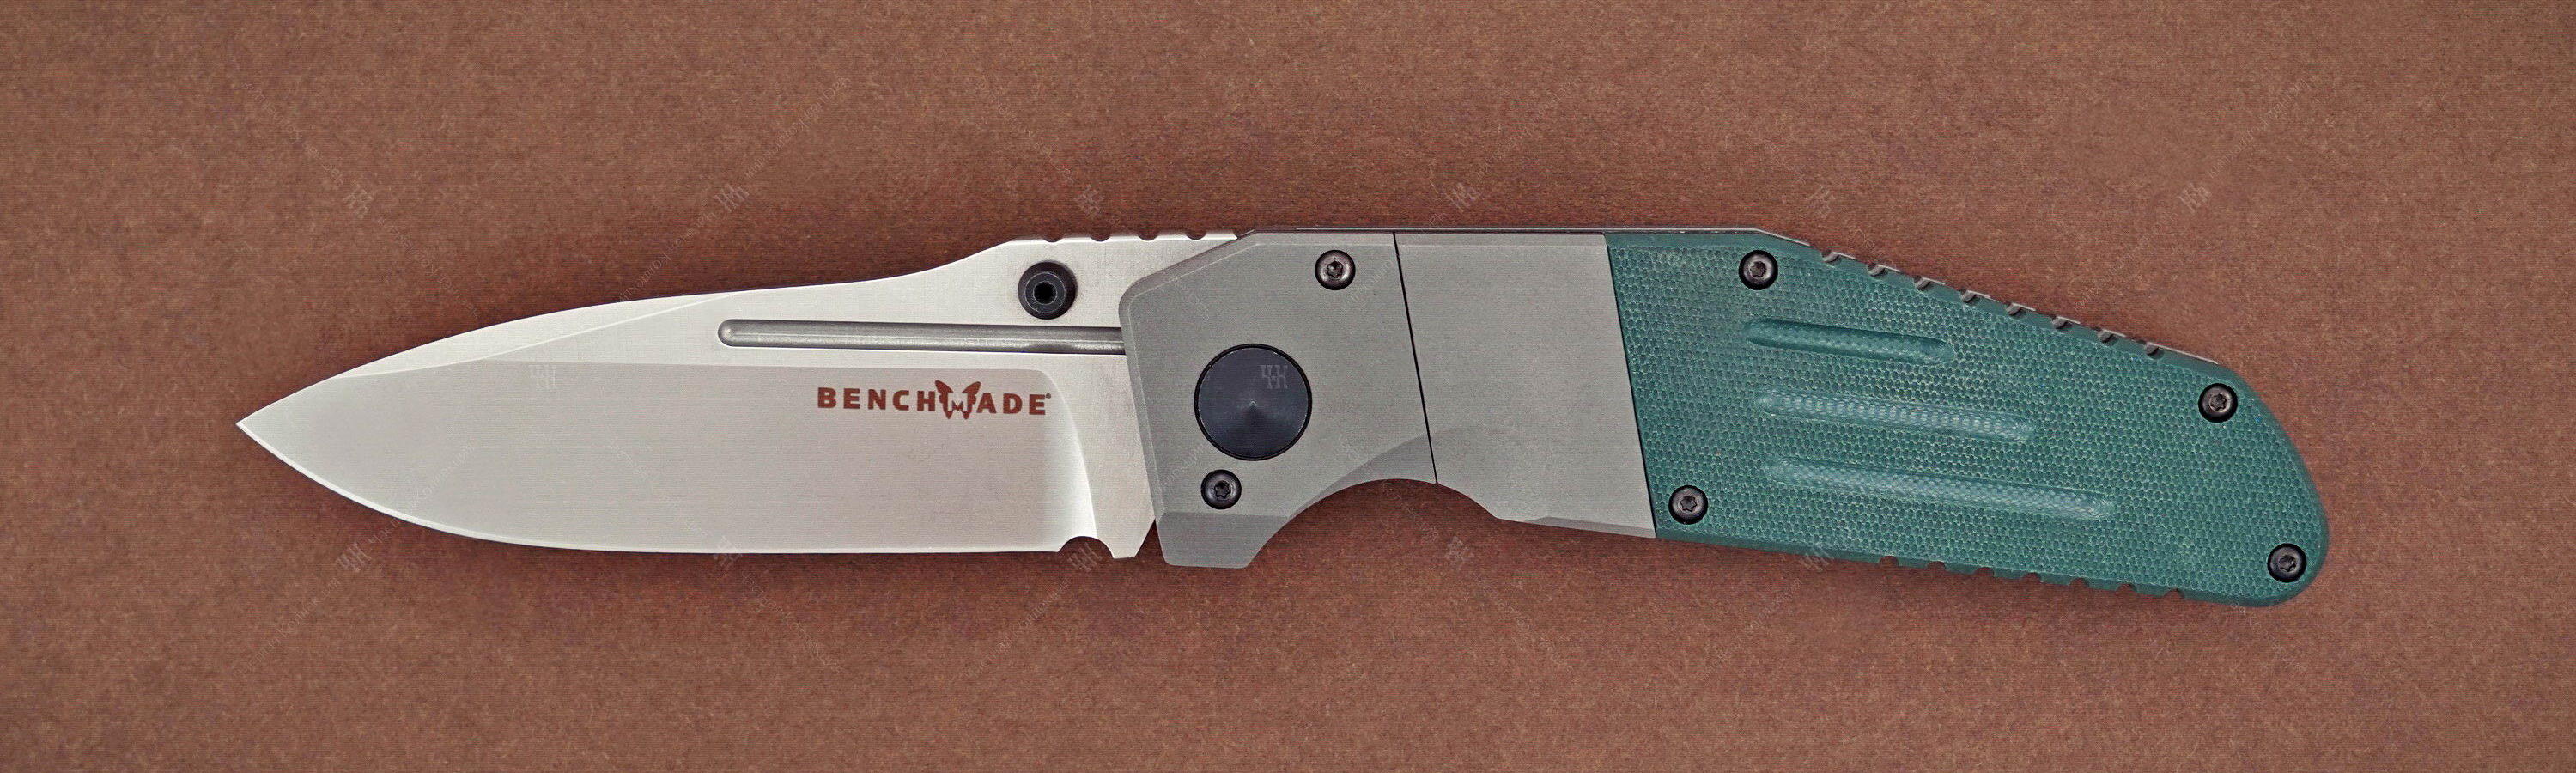 Лимитированный нож 7505-132 Gold class